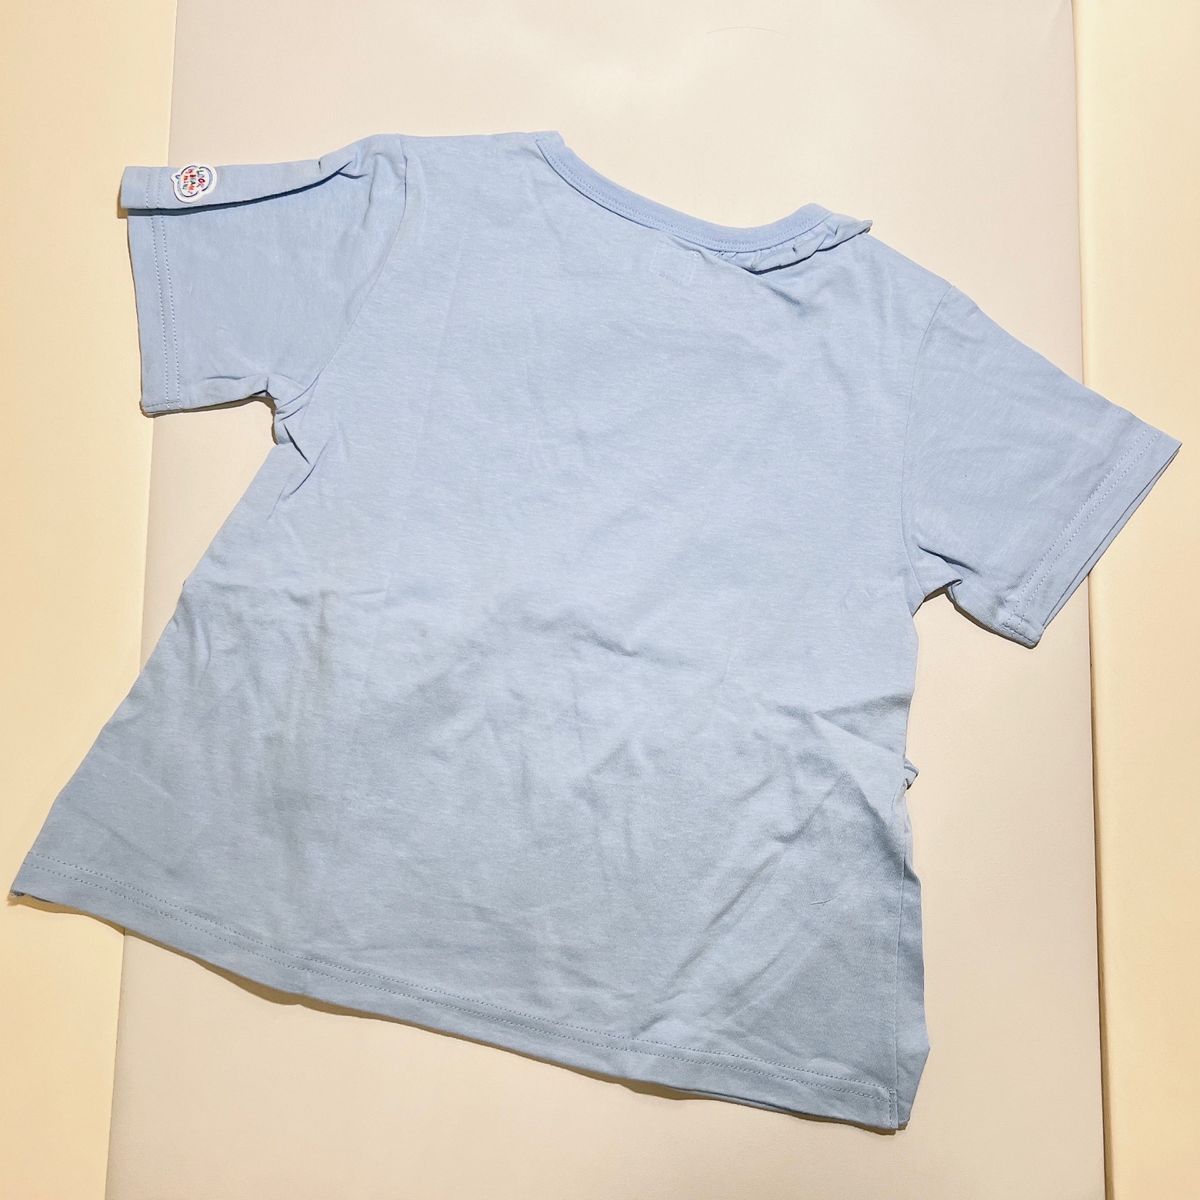 【おすすめ】ルックバイビームスミニ ラッフルTシャツ 子ども服 Tシャツ